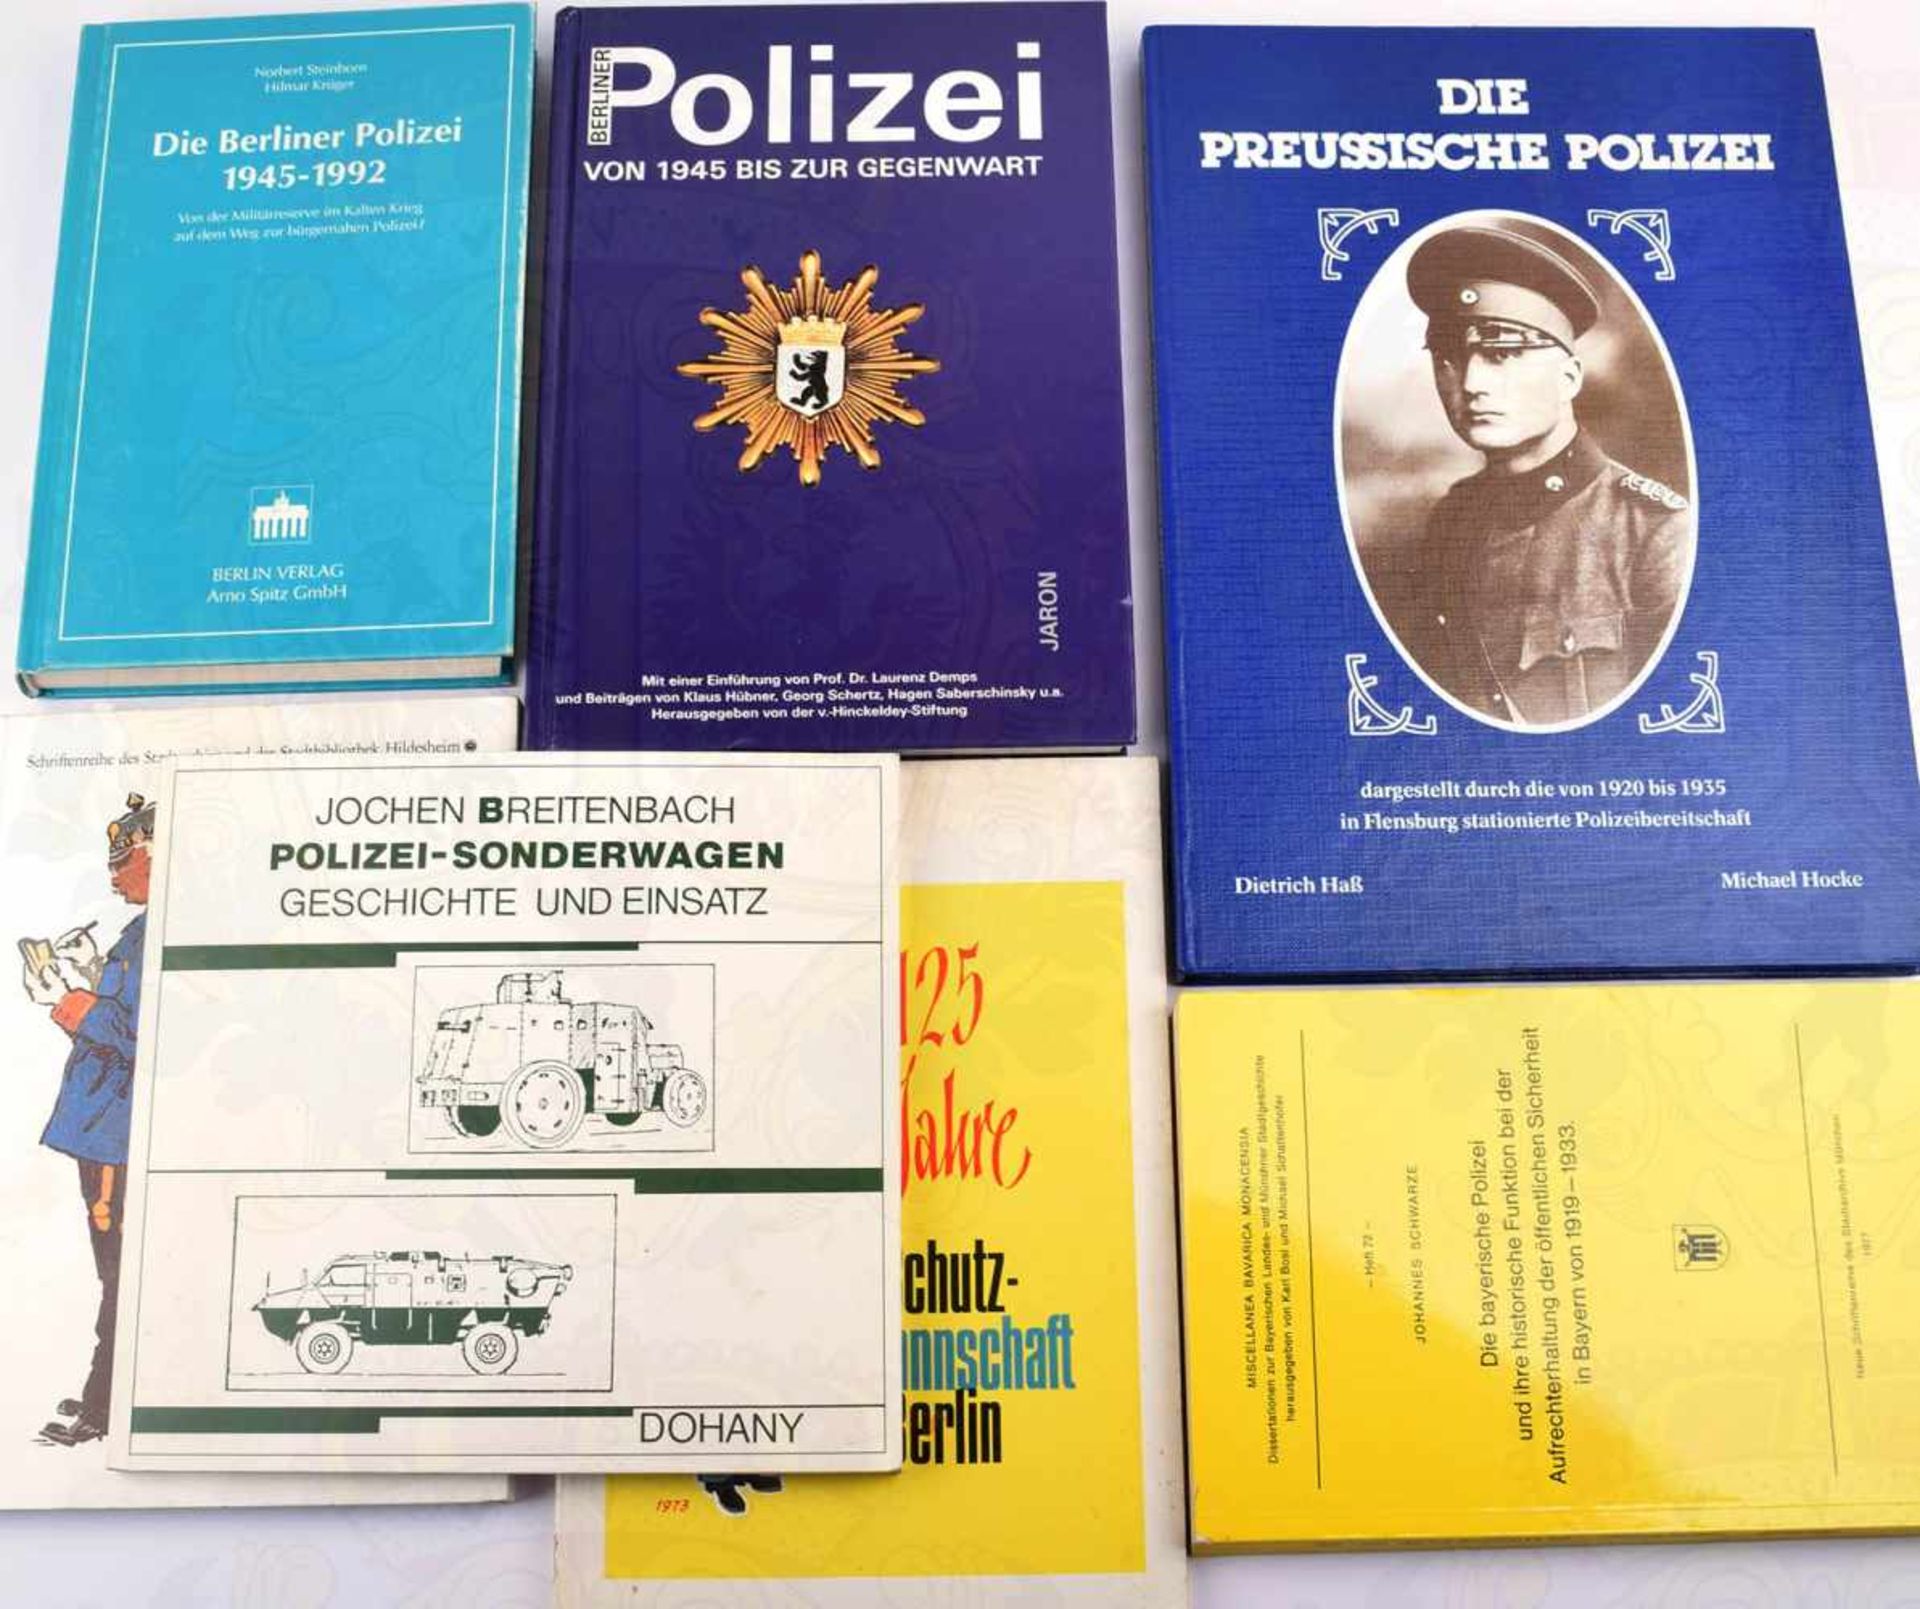 7 TITEL DEUTSCHE POLIZEI, Die Preußische Polizei...1920-1935 (in Flensburg); 125 Jahre